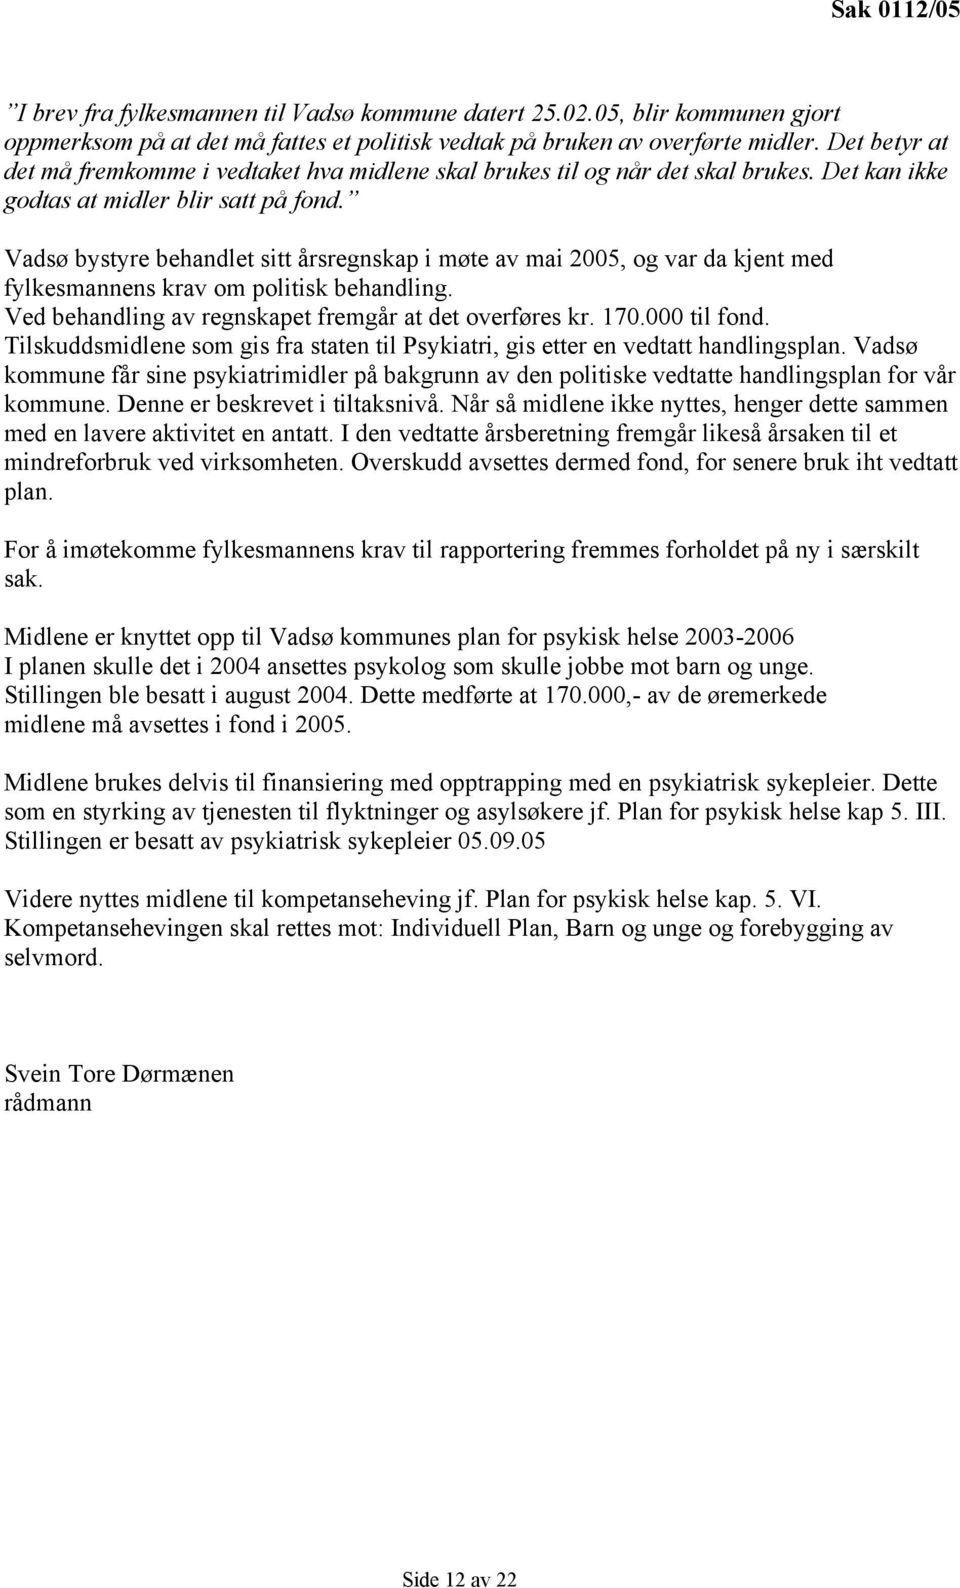 Vadsø bystyre behandlet sitt årsregnskap i møte av mai 2005, og var da kjent med fylkesmannens krav om politisk behandling. Ved behandling av regnskapet fremgår at det overføres kr. 170.000 til fond.